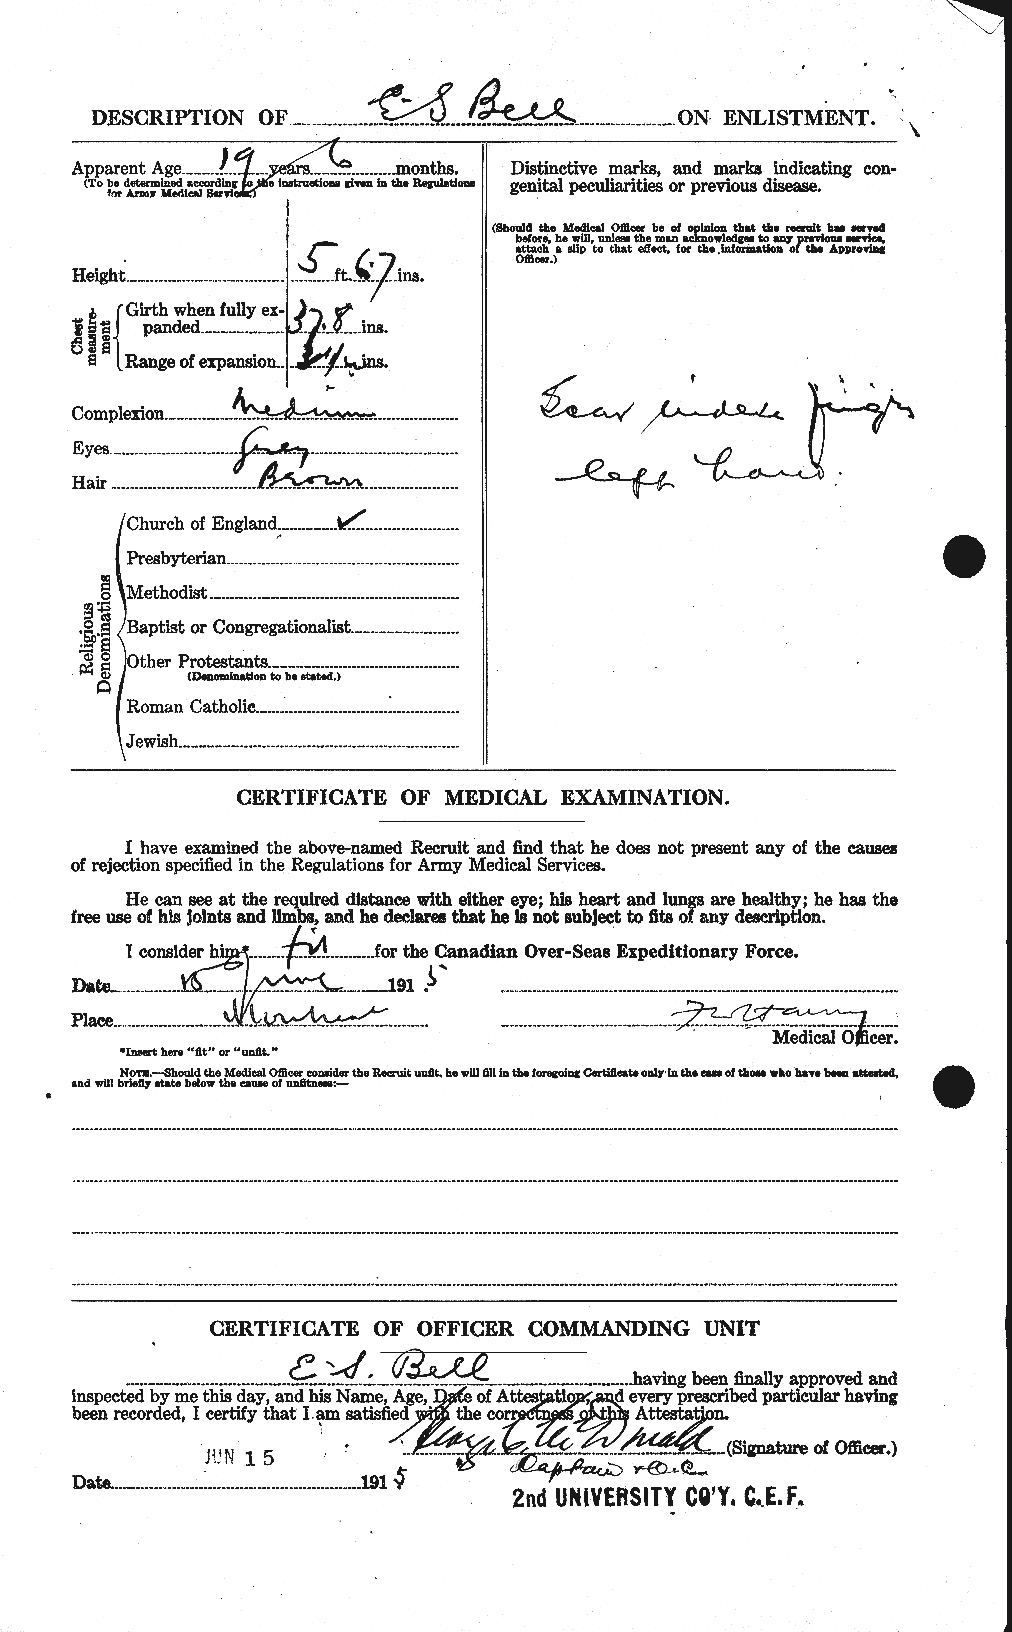 Dossiers du Personnel de la Première Guerre mondiale - CEC 234077b